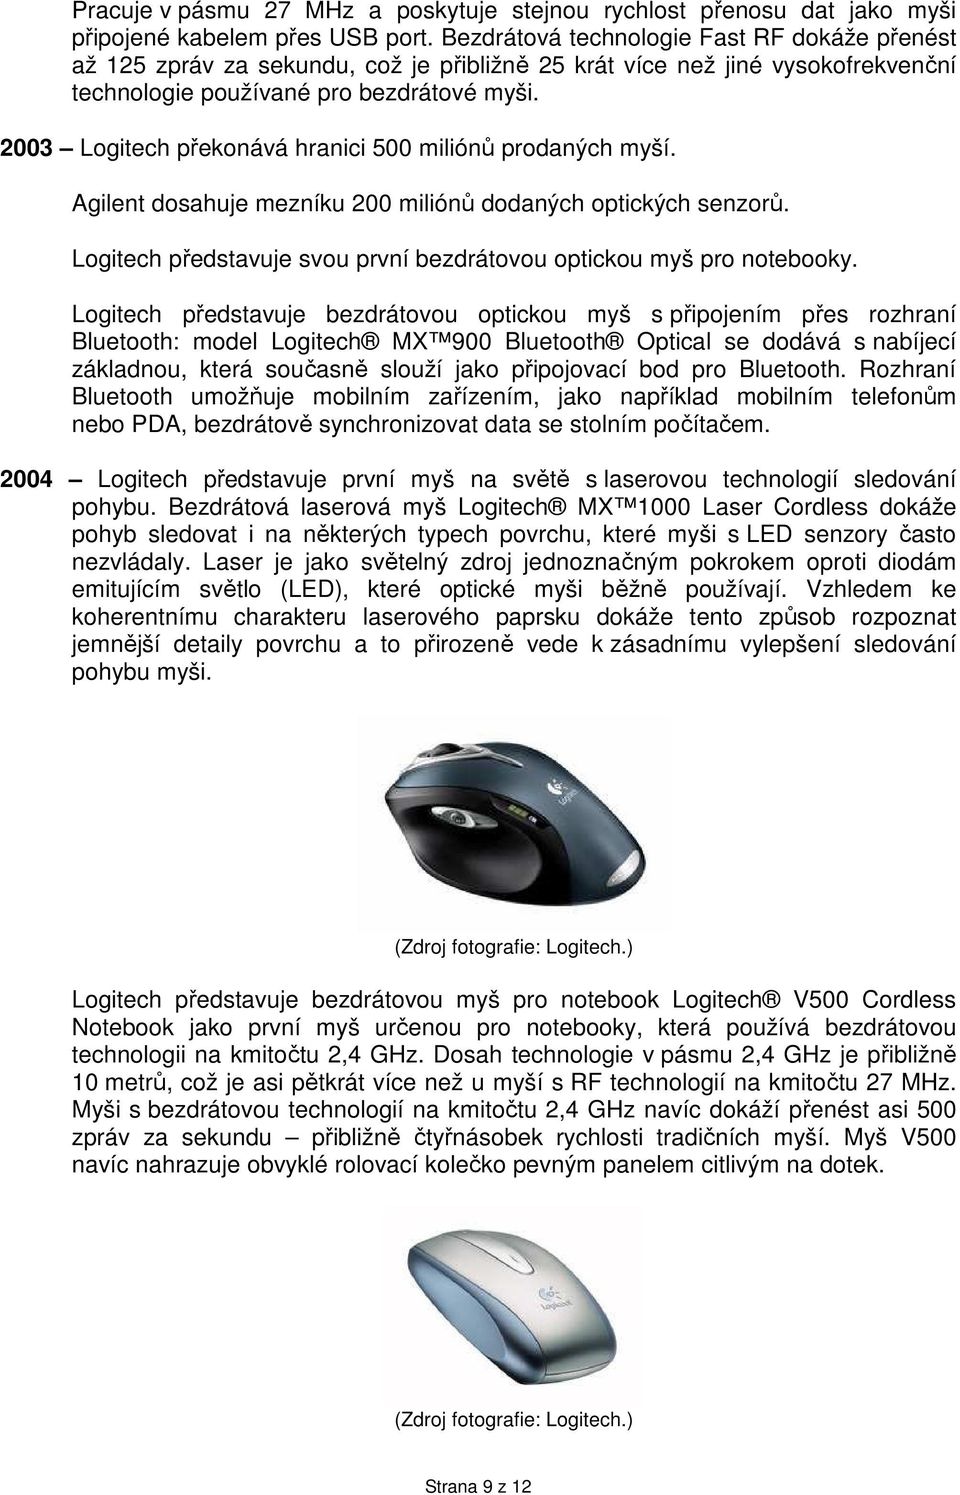 2003 Logitech překonává hranici 500 miliónů prodaných myší. Agilent dosahuje mezníku 200 miliónů dodaných optických senzorů. Logitech představuje svou první bezdrátovou optickou myš pro notebooky.